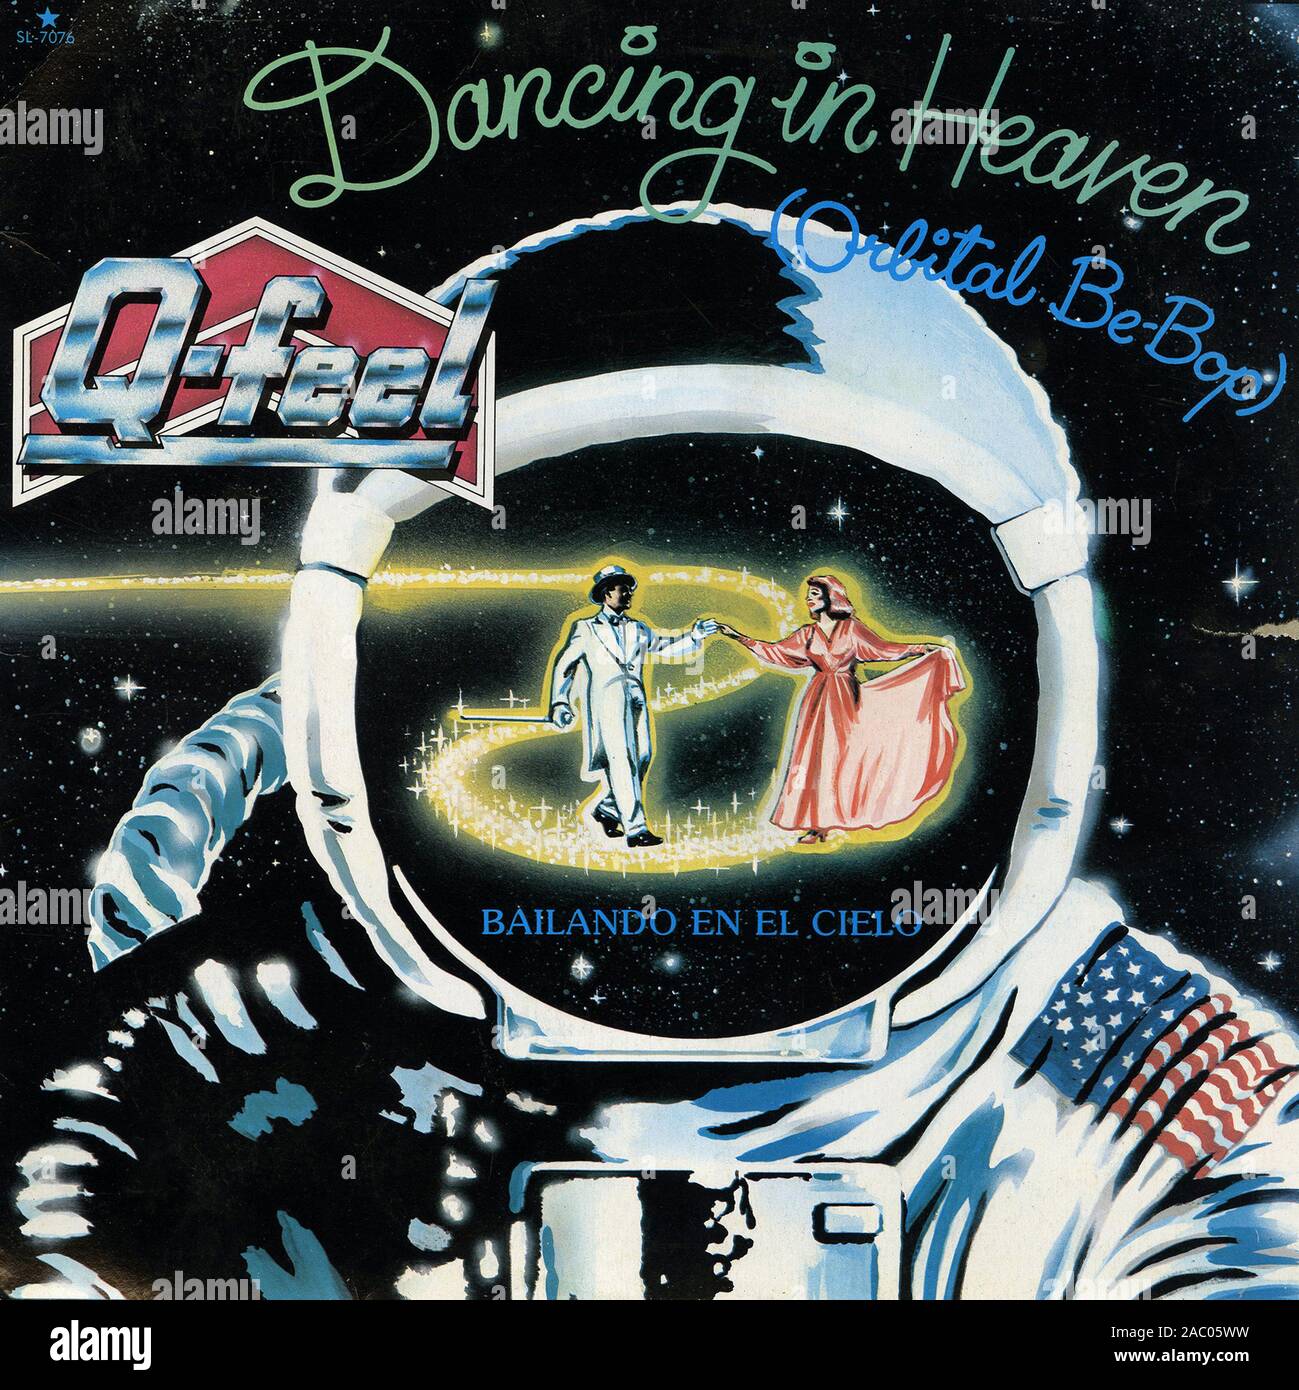 Dancing In Heaven (Orbital Be-Bop)   Bailando En El Cielo   - Vintage vinyl album cover Stock Photo